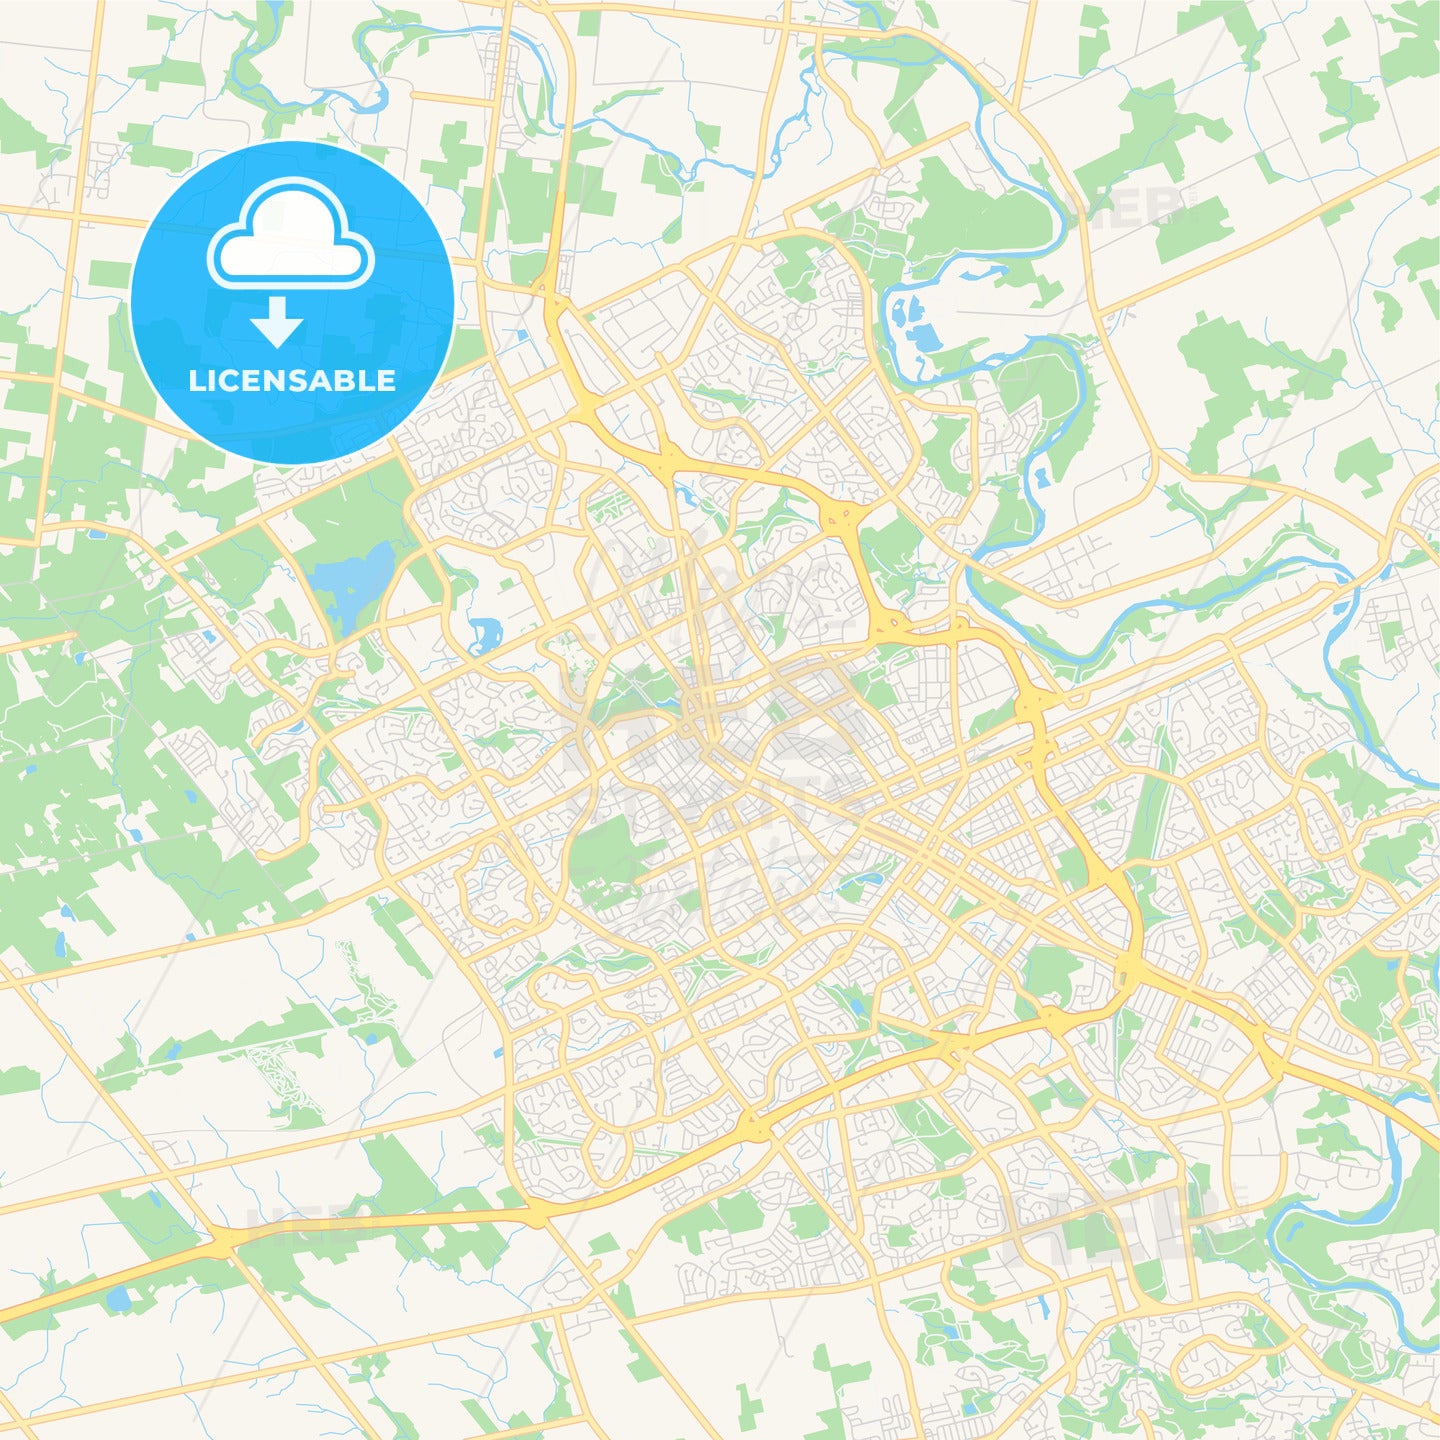 Empty vector map of Waterloo, Ontario, Canada